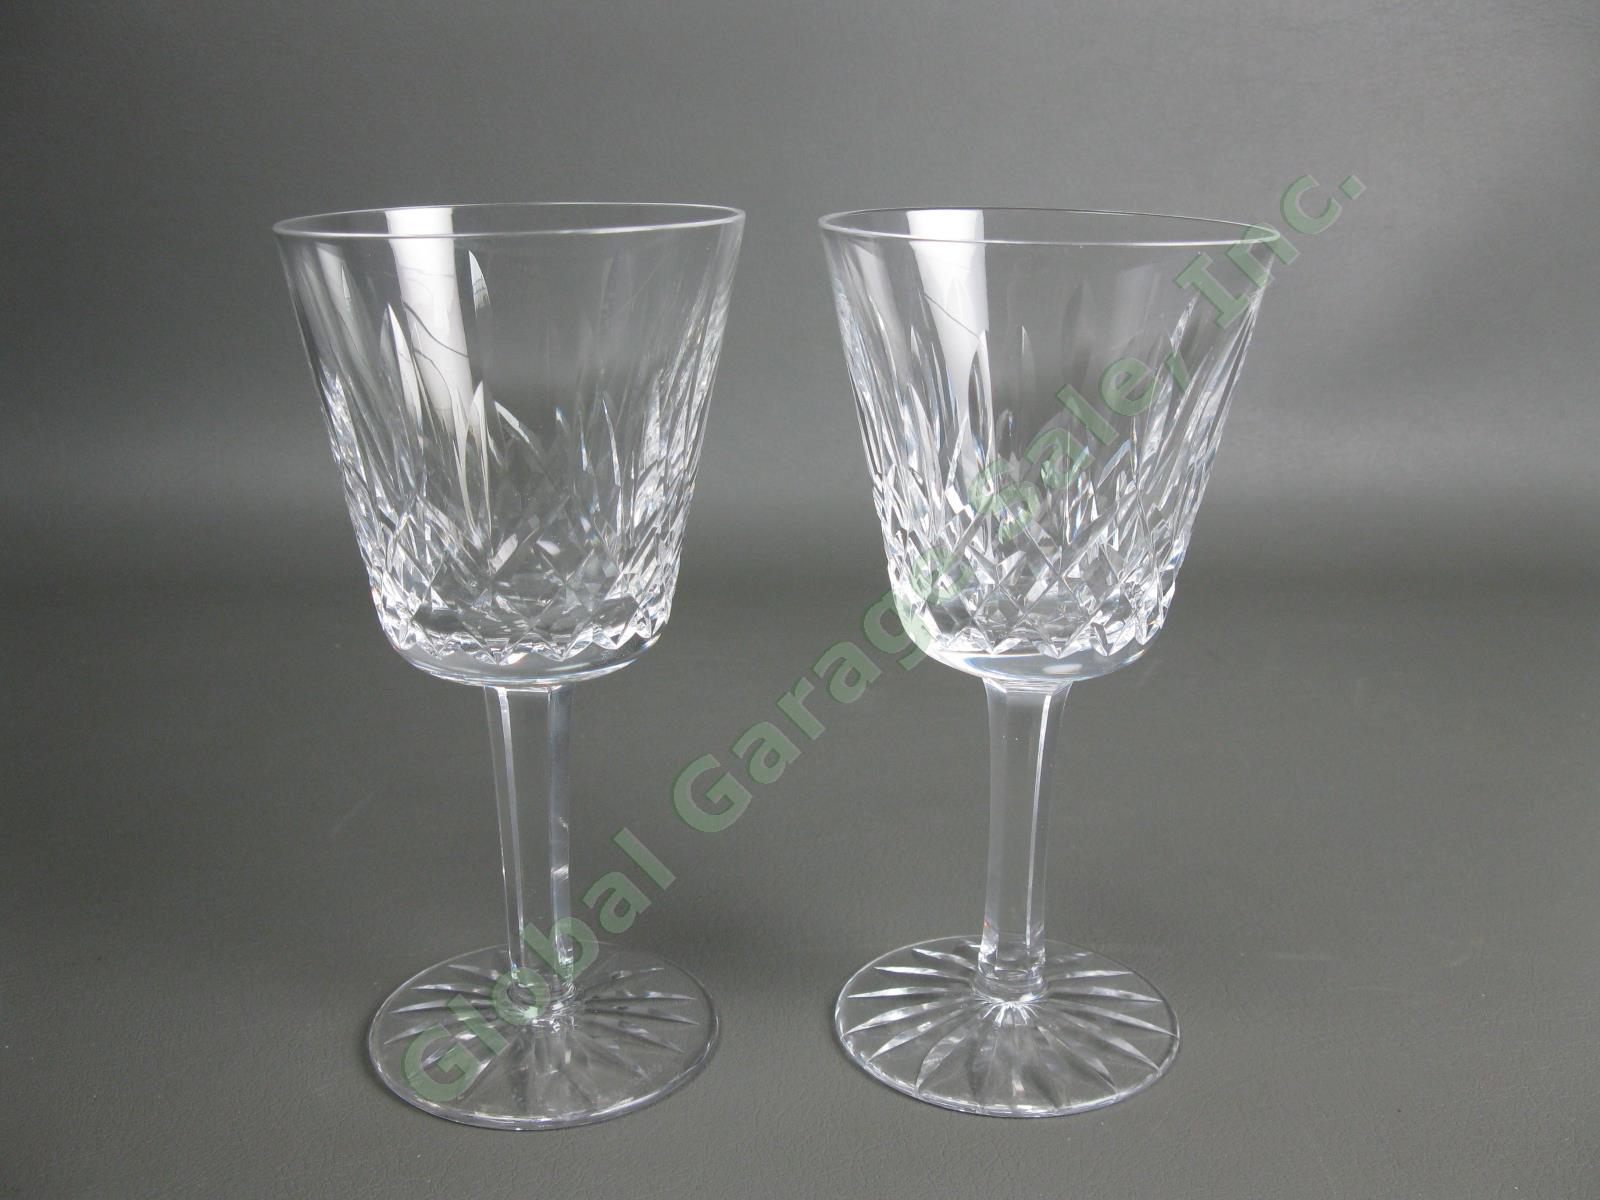 2 Original VTG Waterford Crystal Lismore Claret Wine 5-7/8" Goblet Cut Glass Set